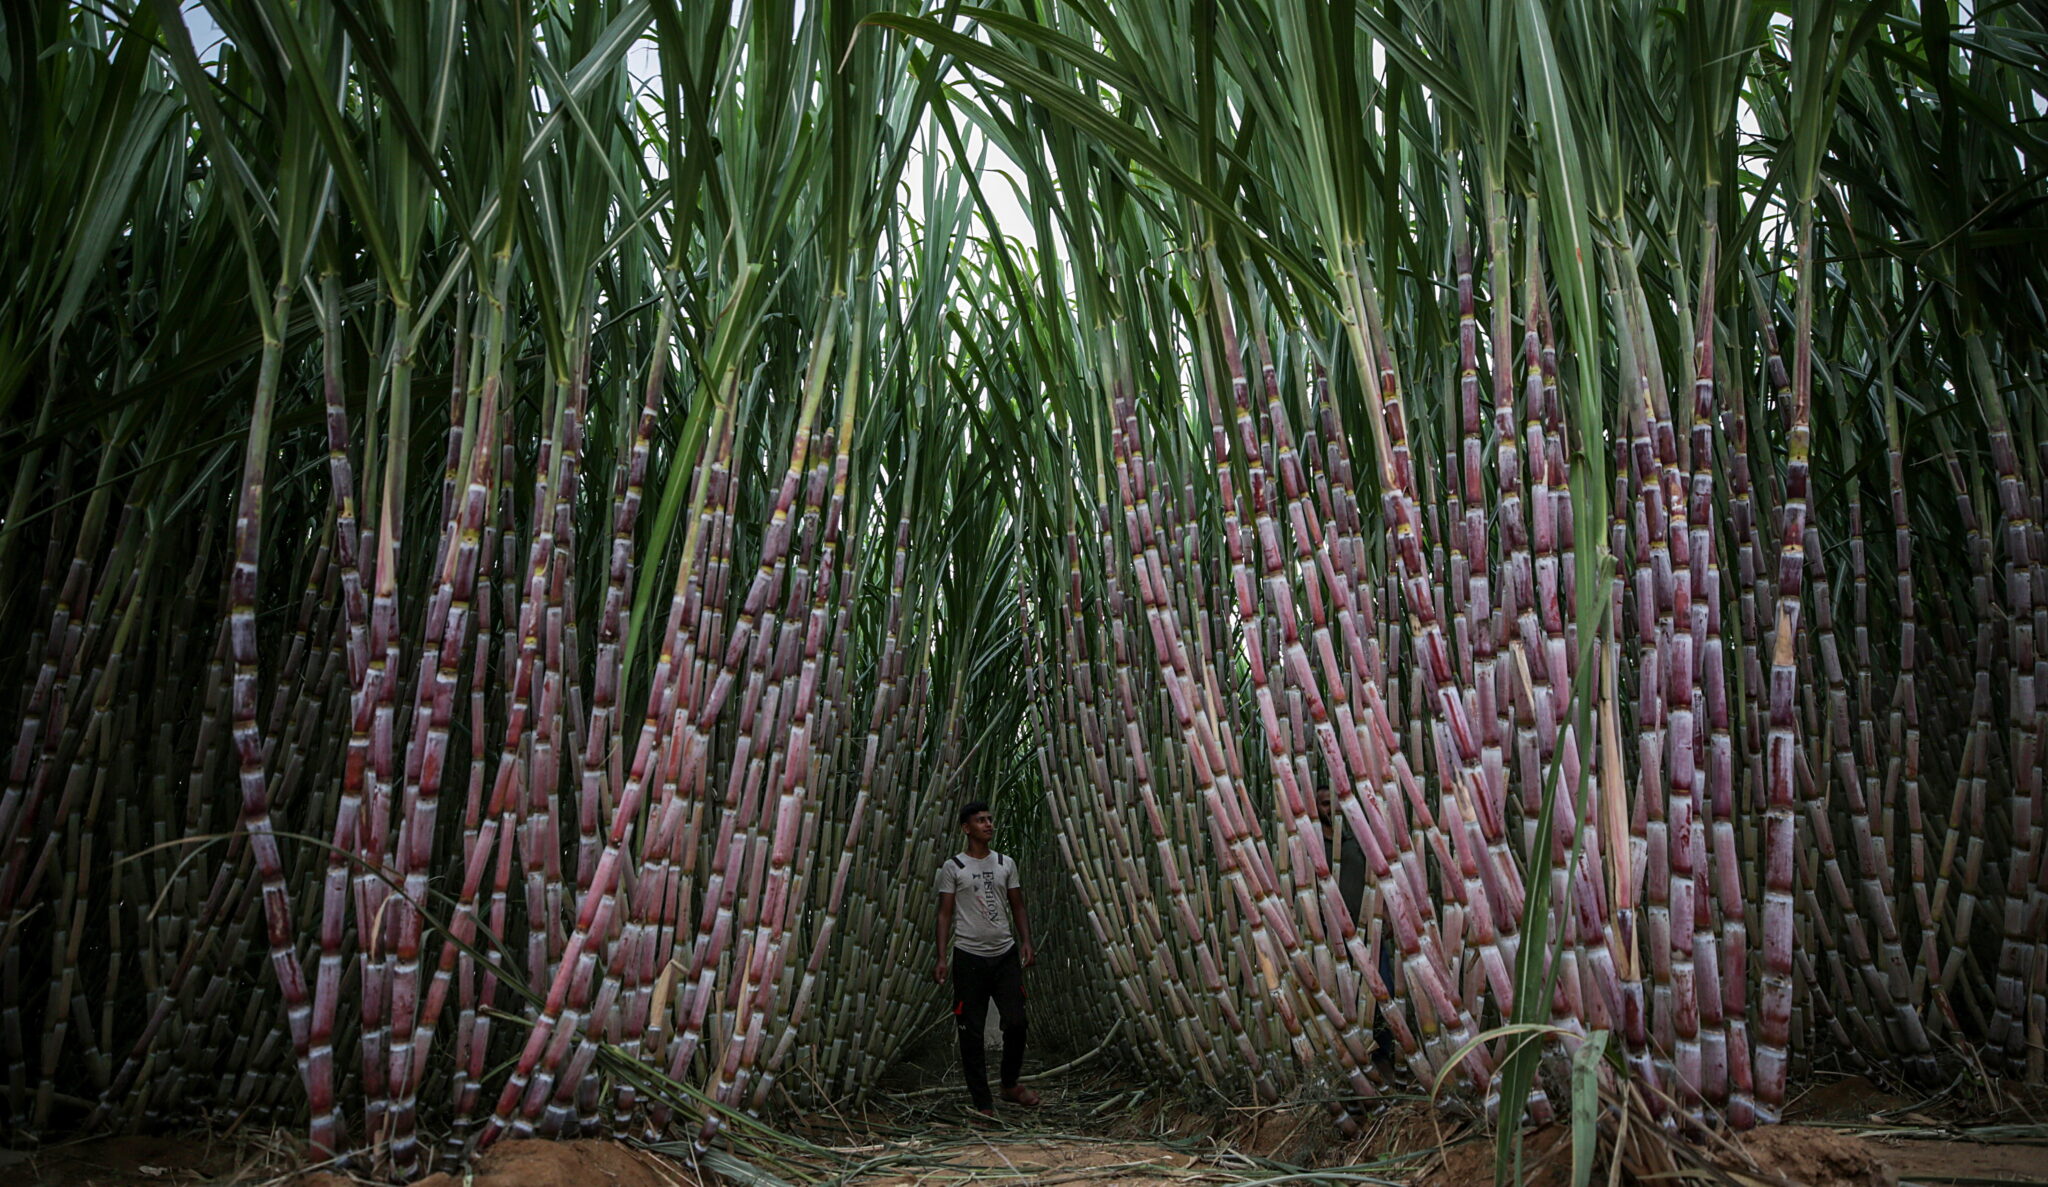  Farma trzciny cukrowej w południowej Strefie Gazy, fot. EPA / MOHAMMED